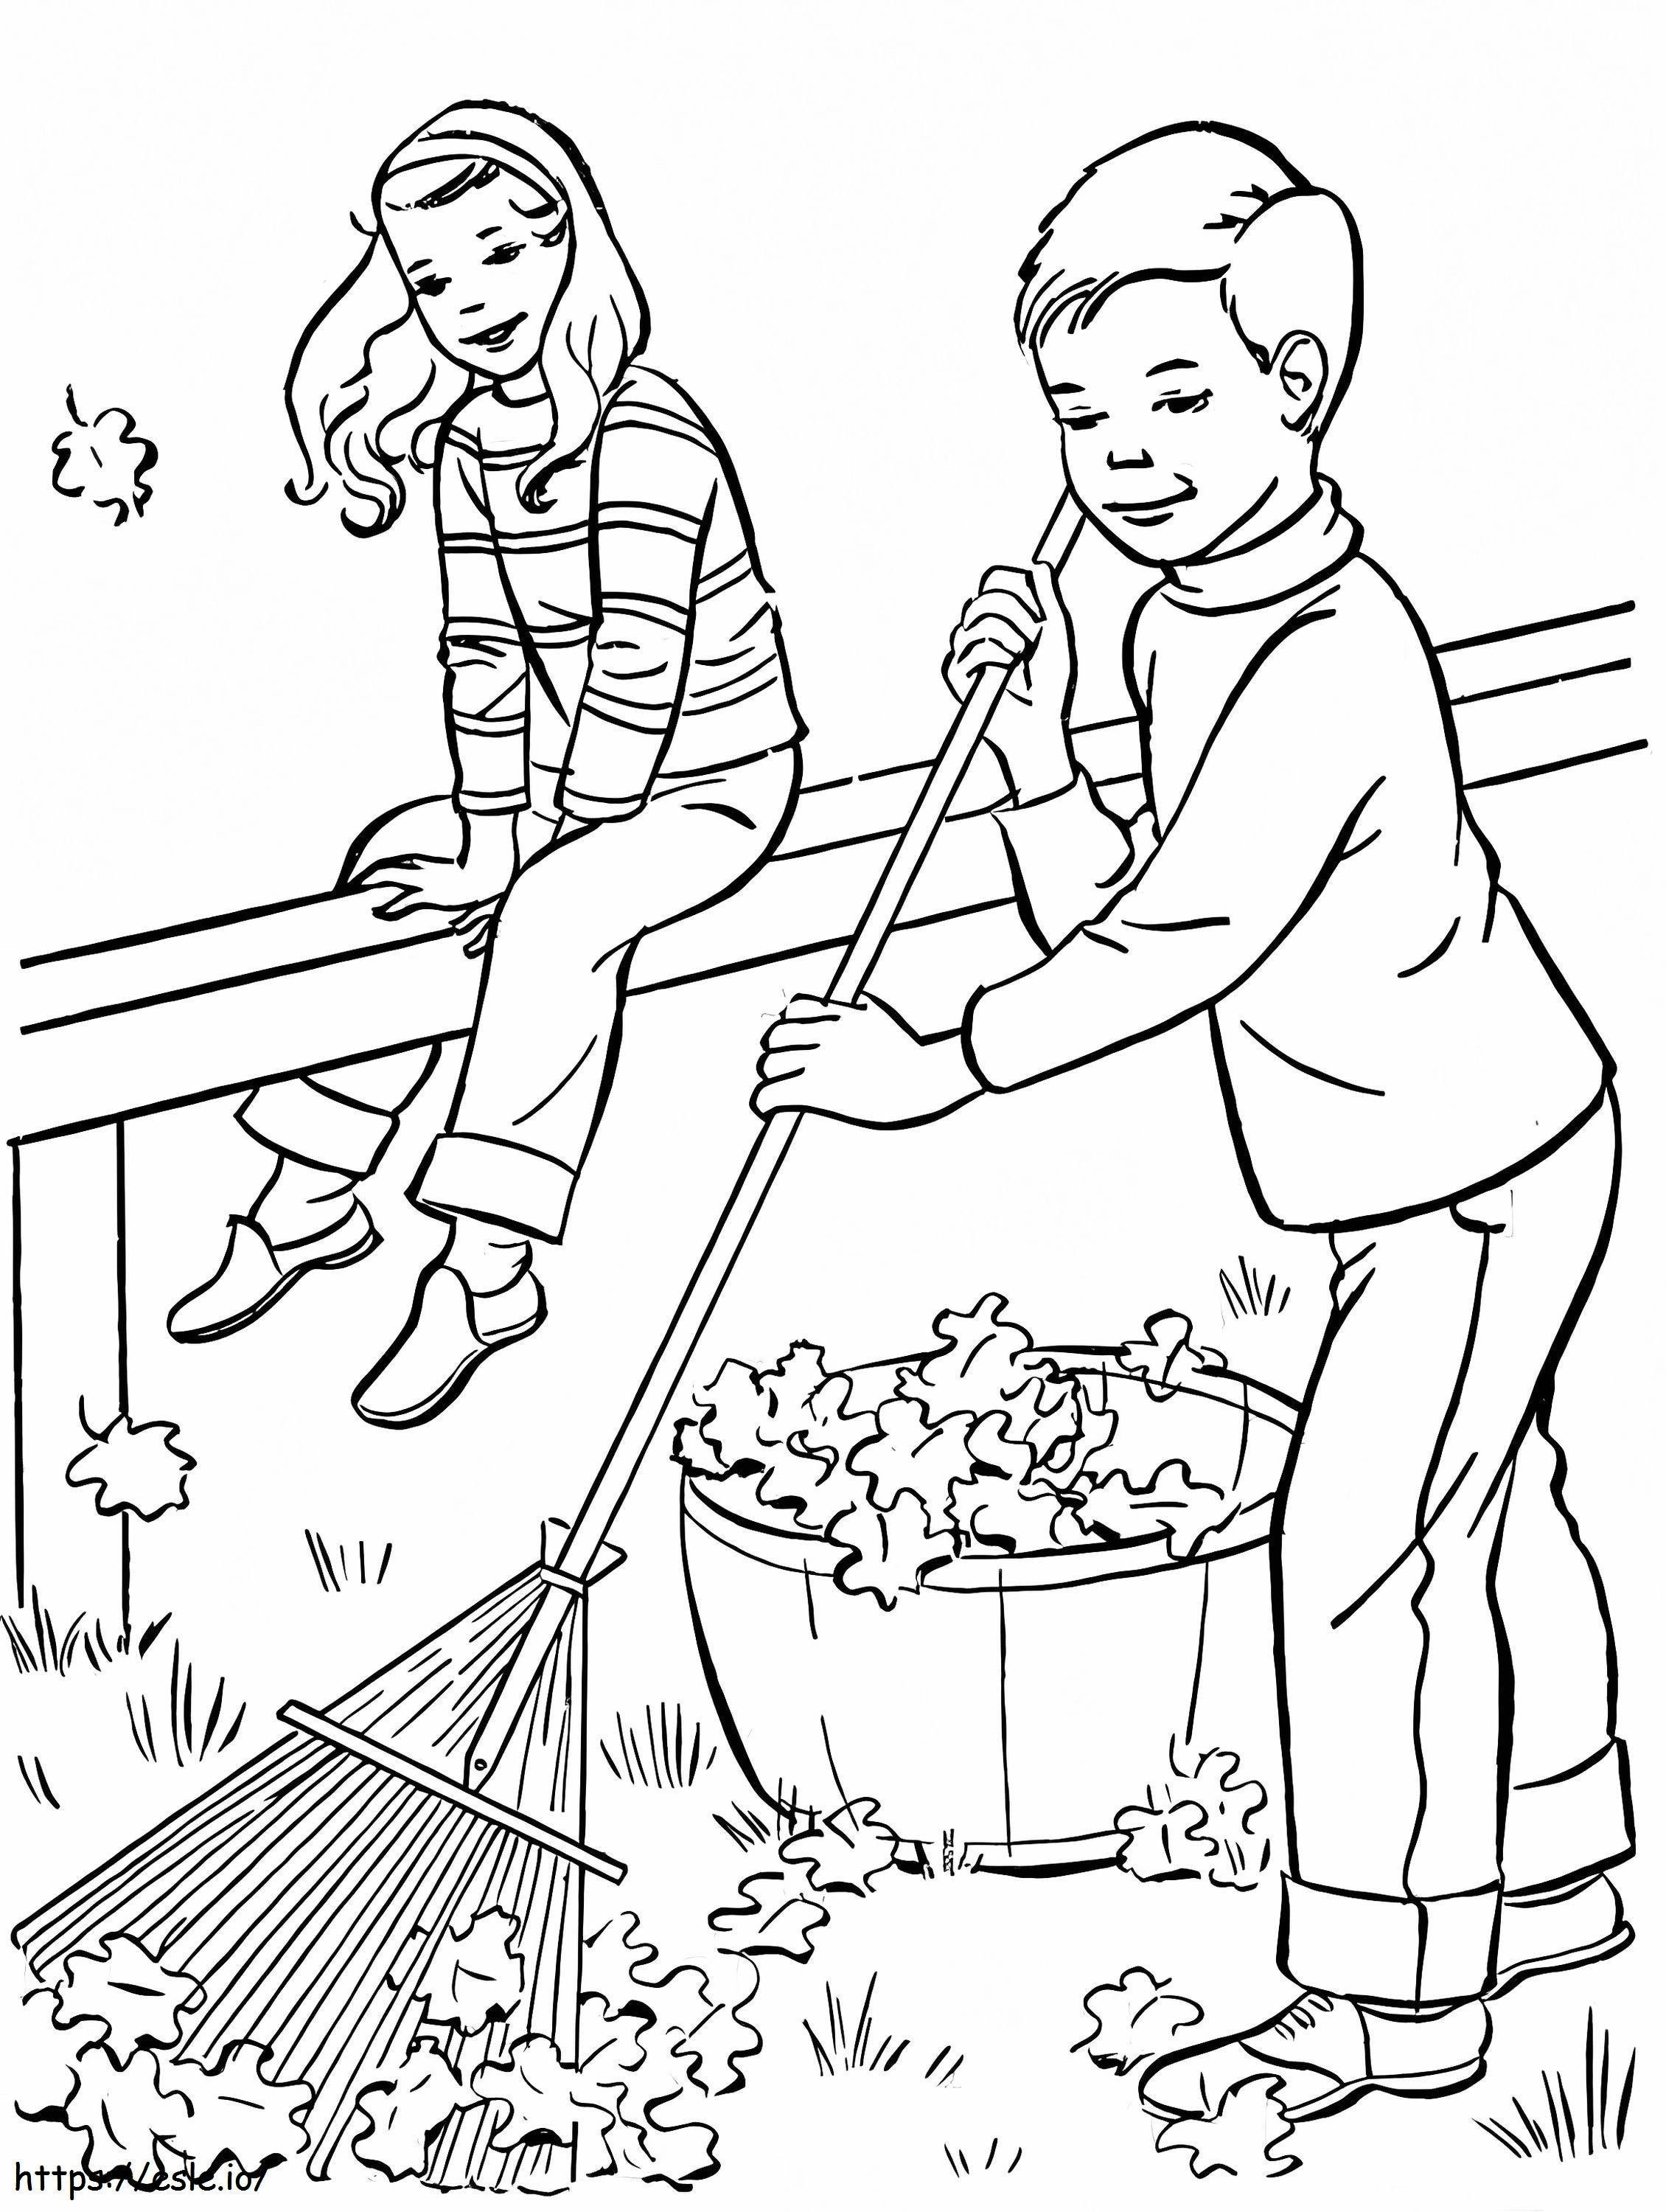 Nina e menino varrendo folhas no outono para colorir